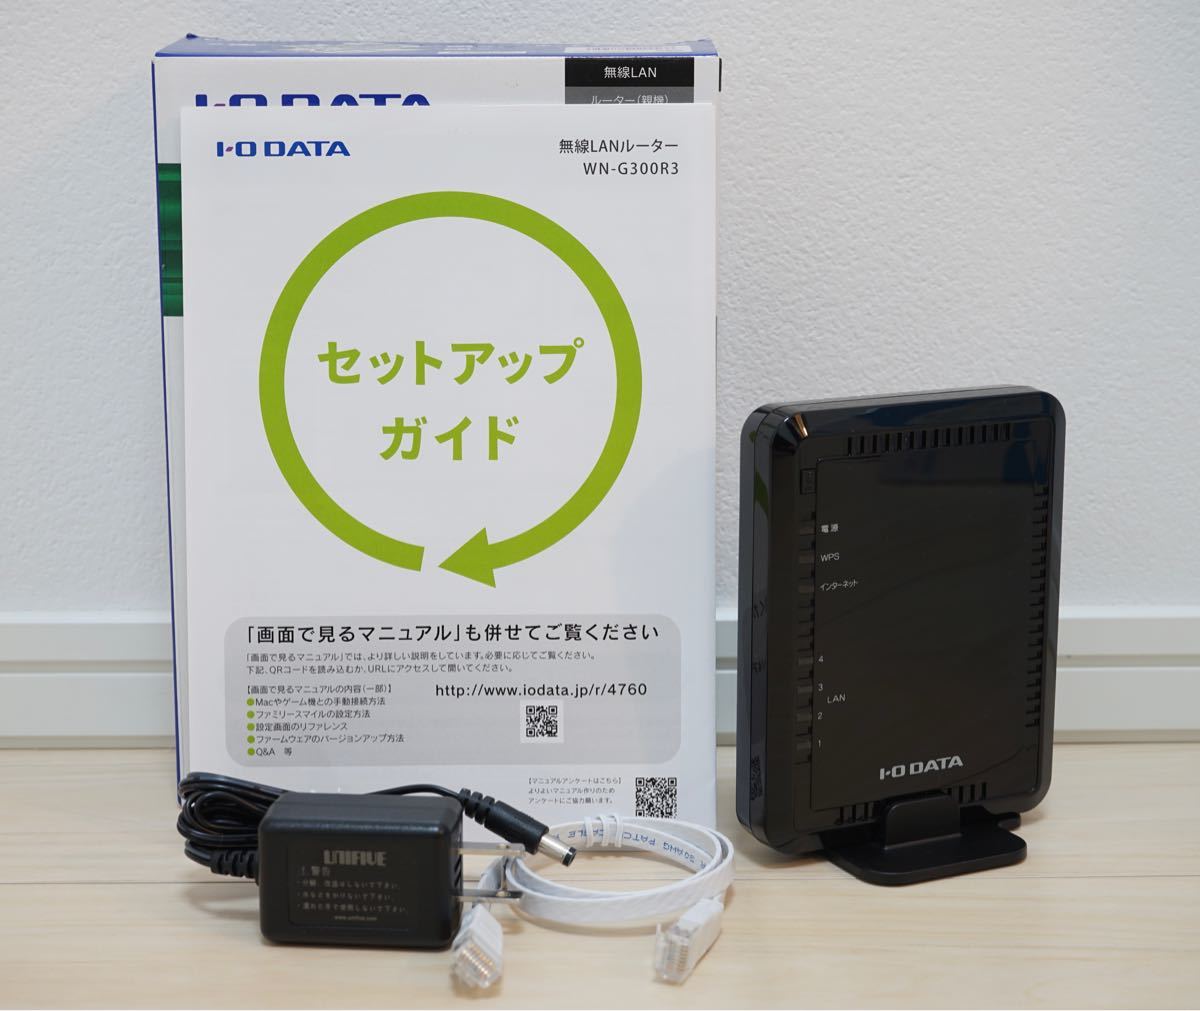 I-O DATA 無線LANルーター WN-G300R3